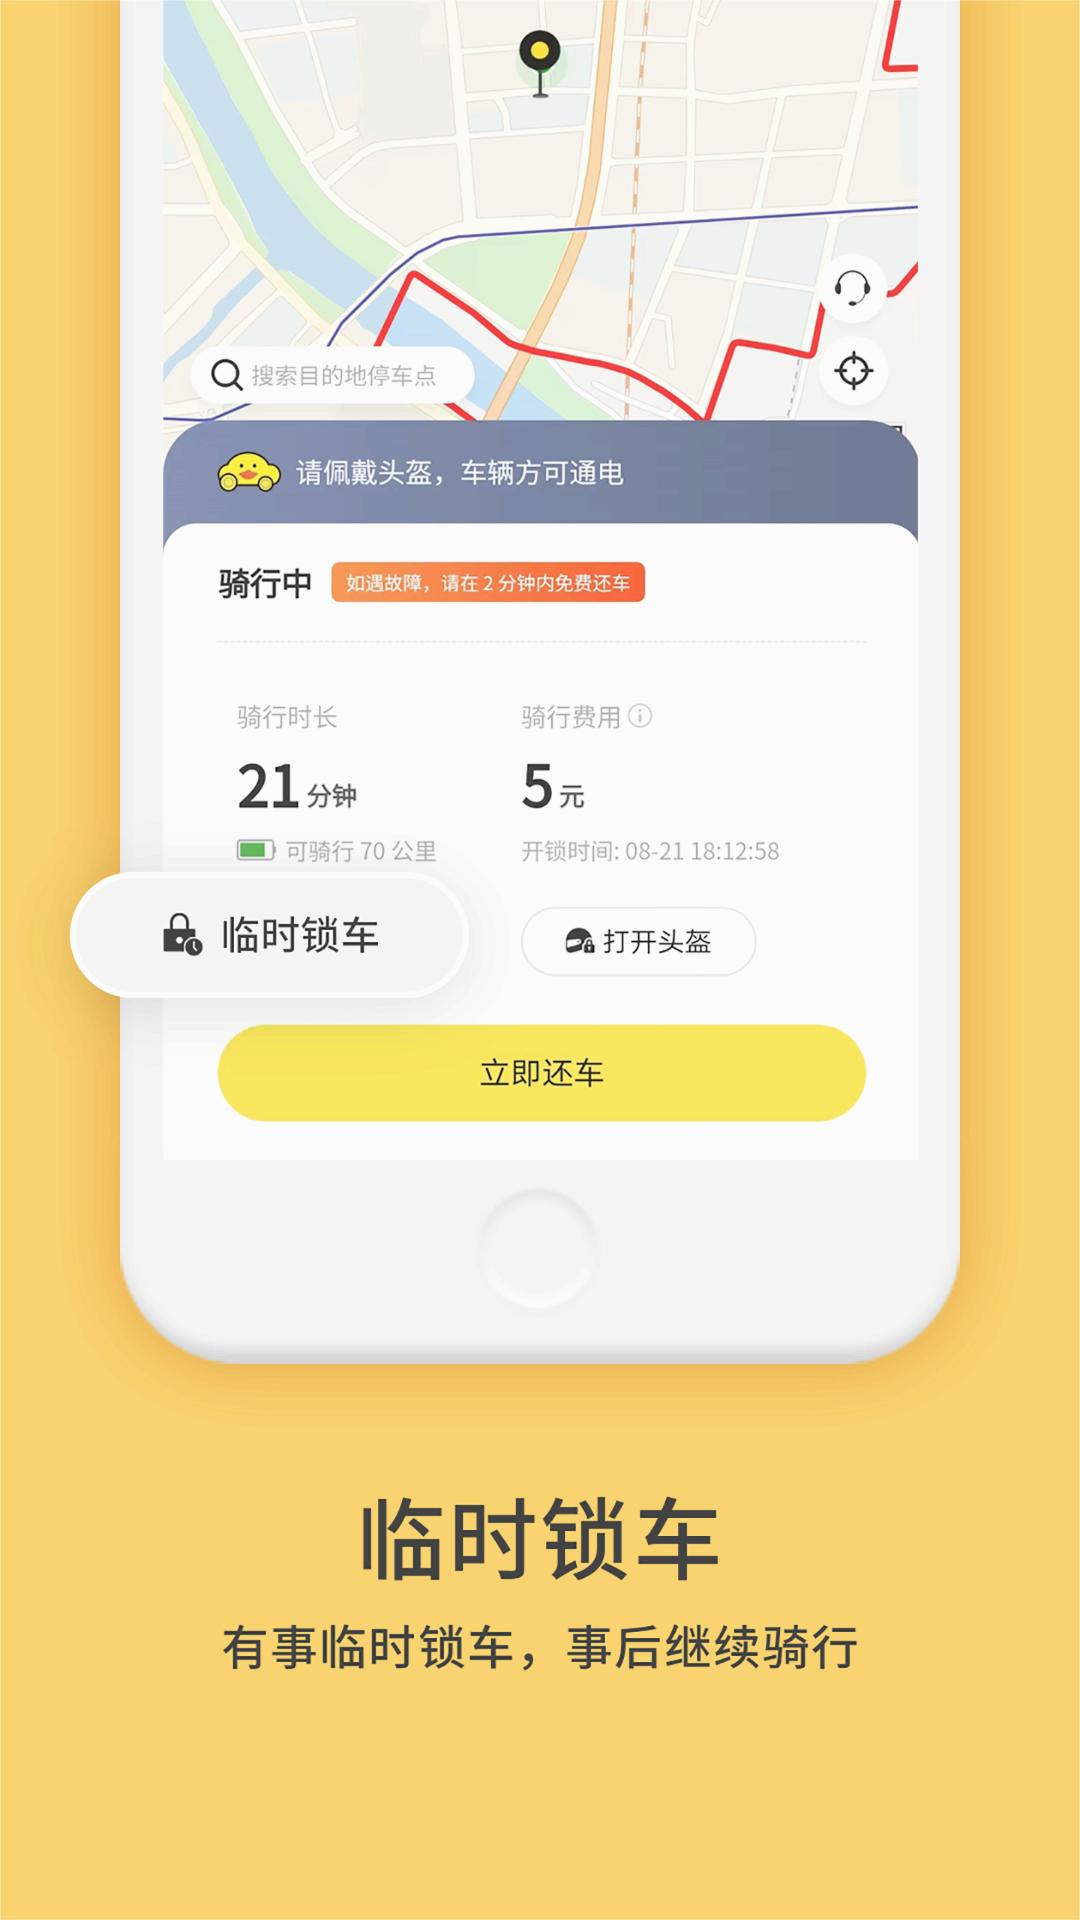 小黄鸭共享app